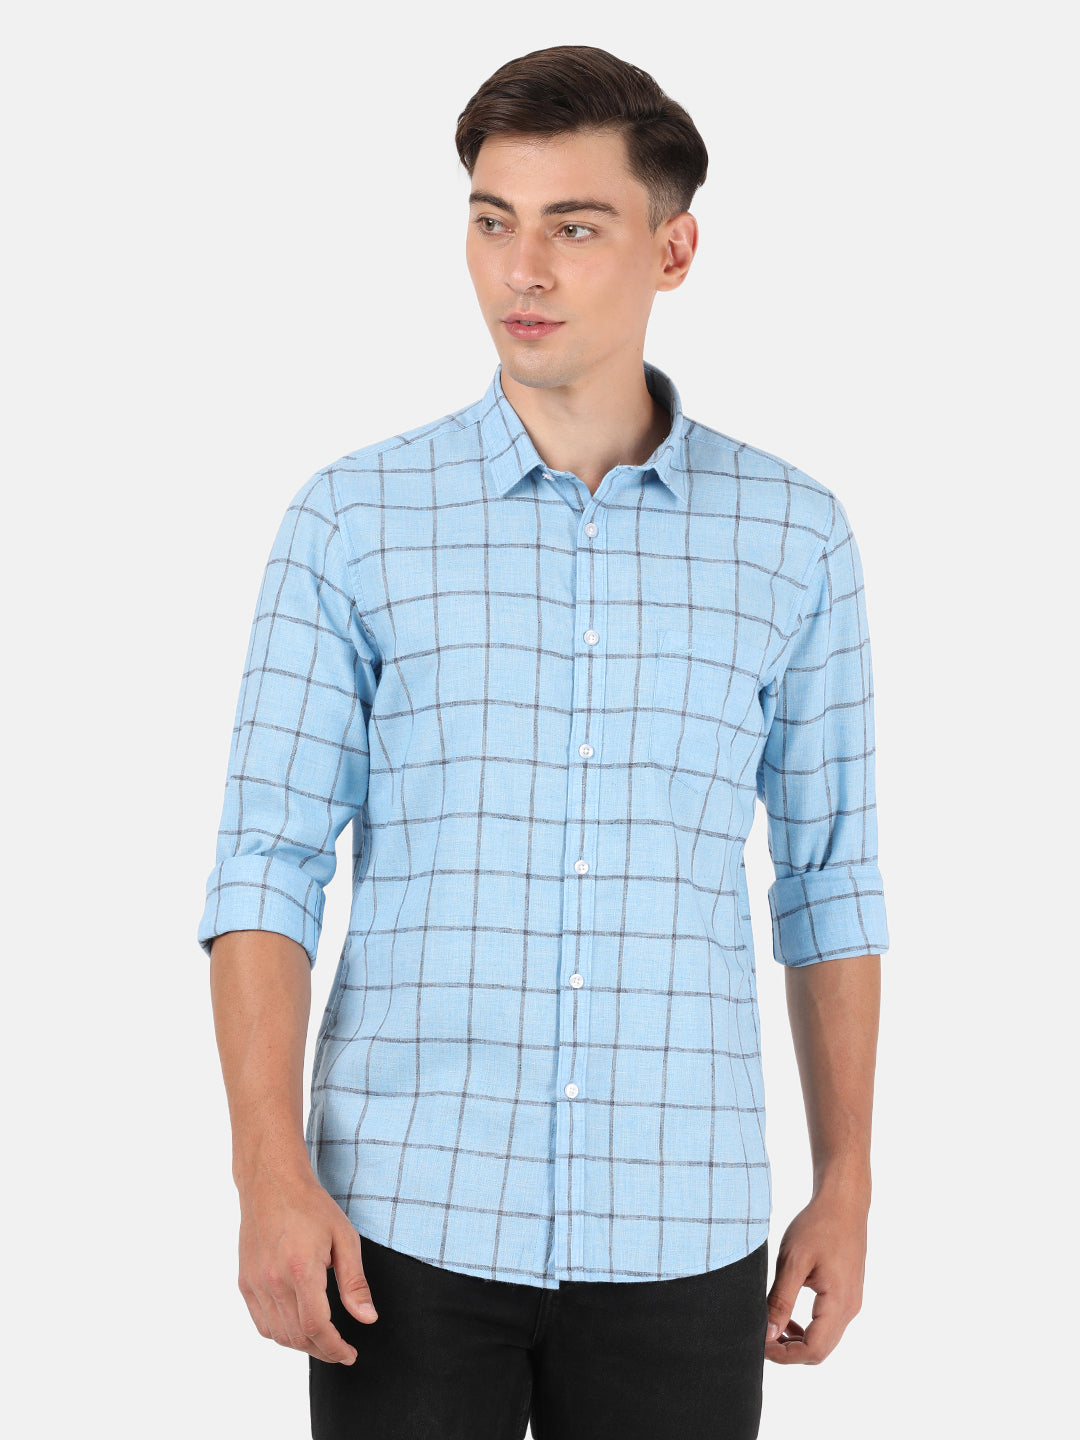 Crocodile Men's Linen Blend Stripe Shirt Khaki